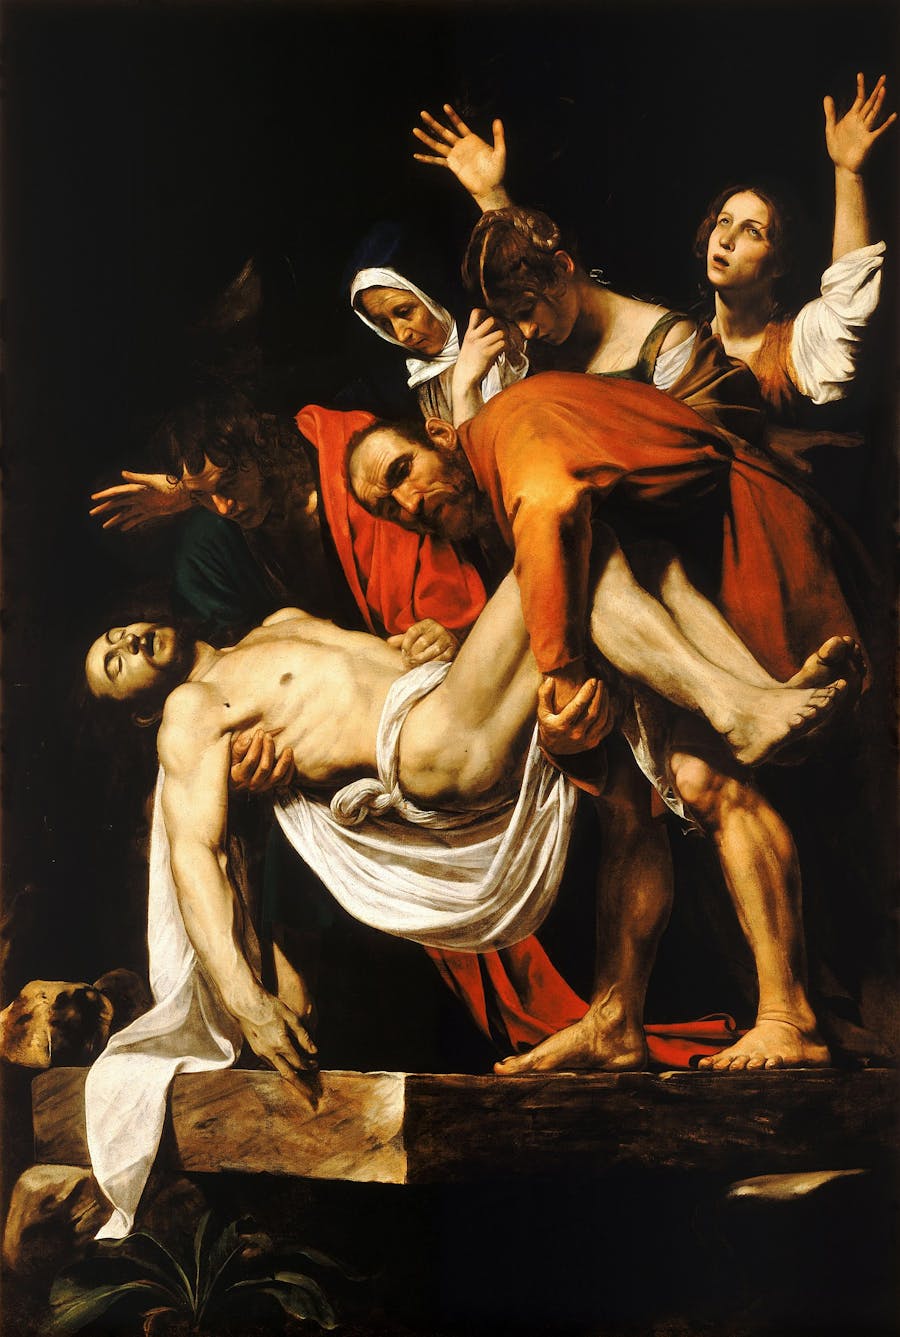 Caravaggio (1571-1610), ‘The Entombment of Christ’, c.1603-4, oil on canvas, 300 cm x 203 cm, Pinacoteca Vaticana, Vatican City. Public domain image